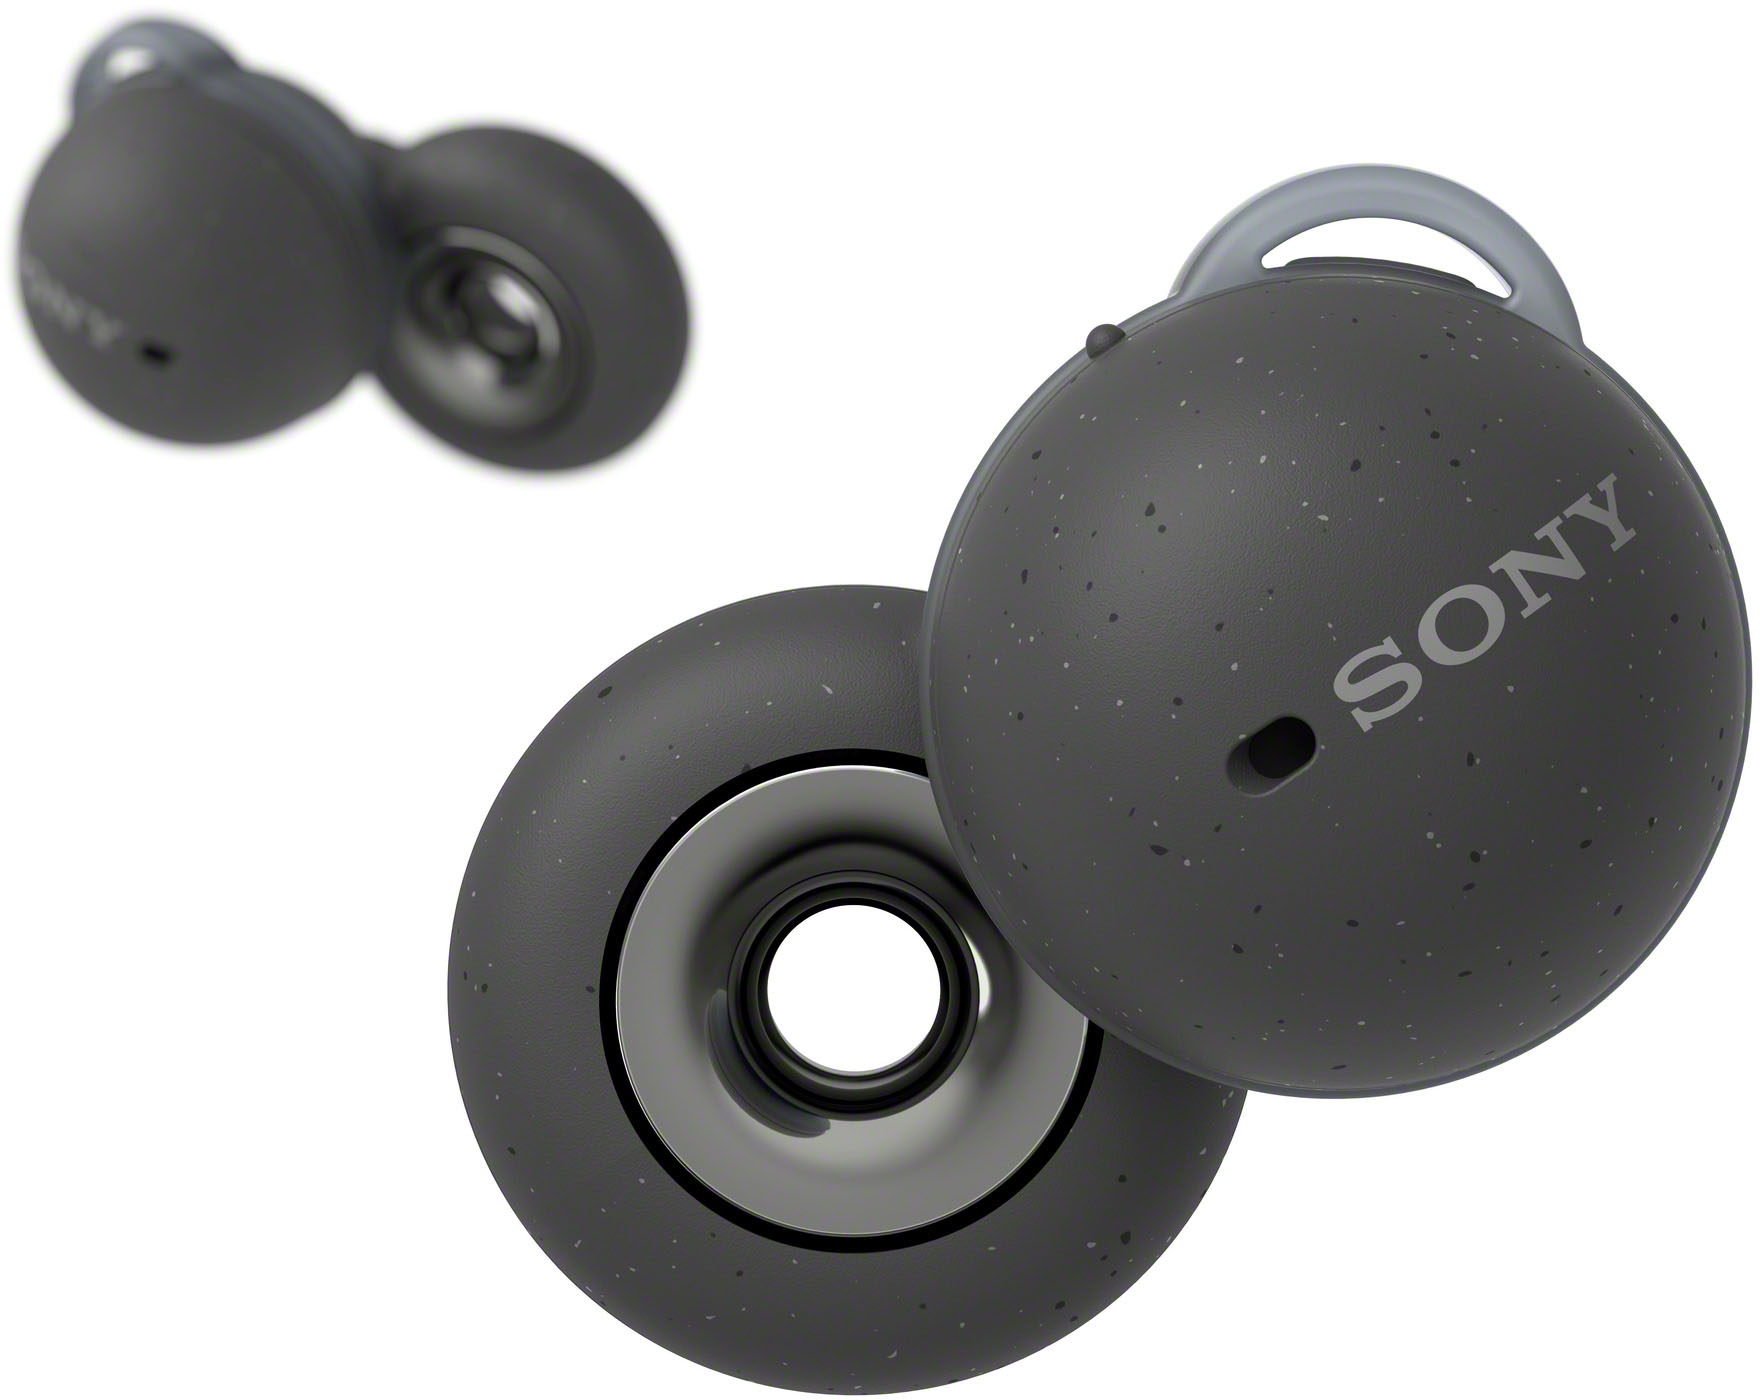 Sony LinkBuds True Wireless Open-Ear Earbuds Dark Gray 